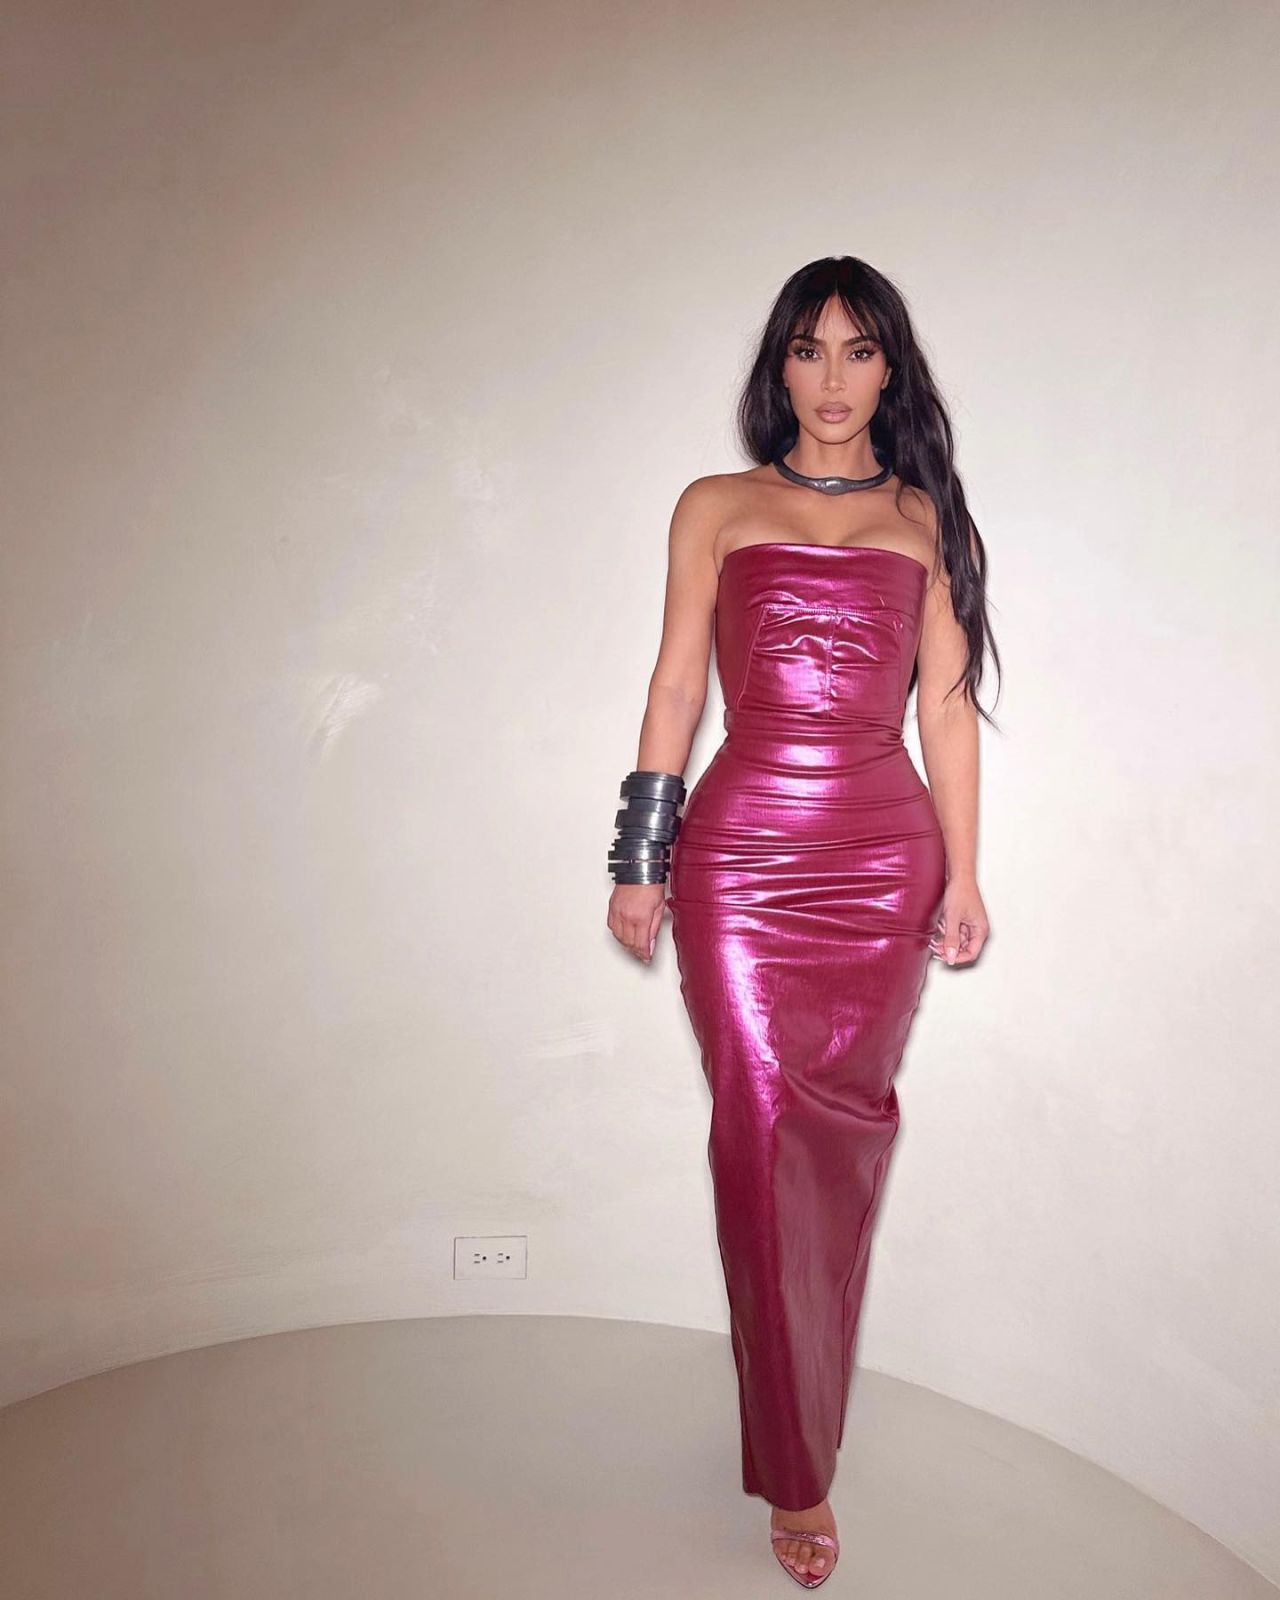 Kim Kardashian Style, Clothes, Outfits and Fashion • CelebMafia